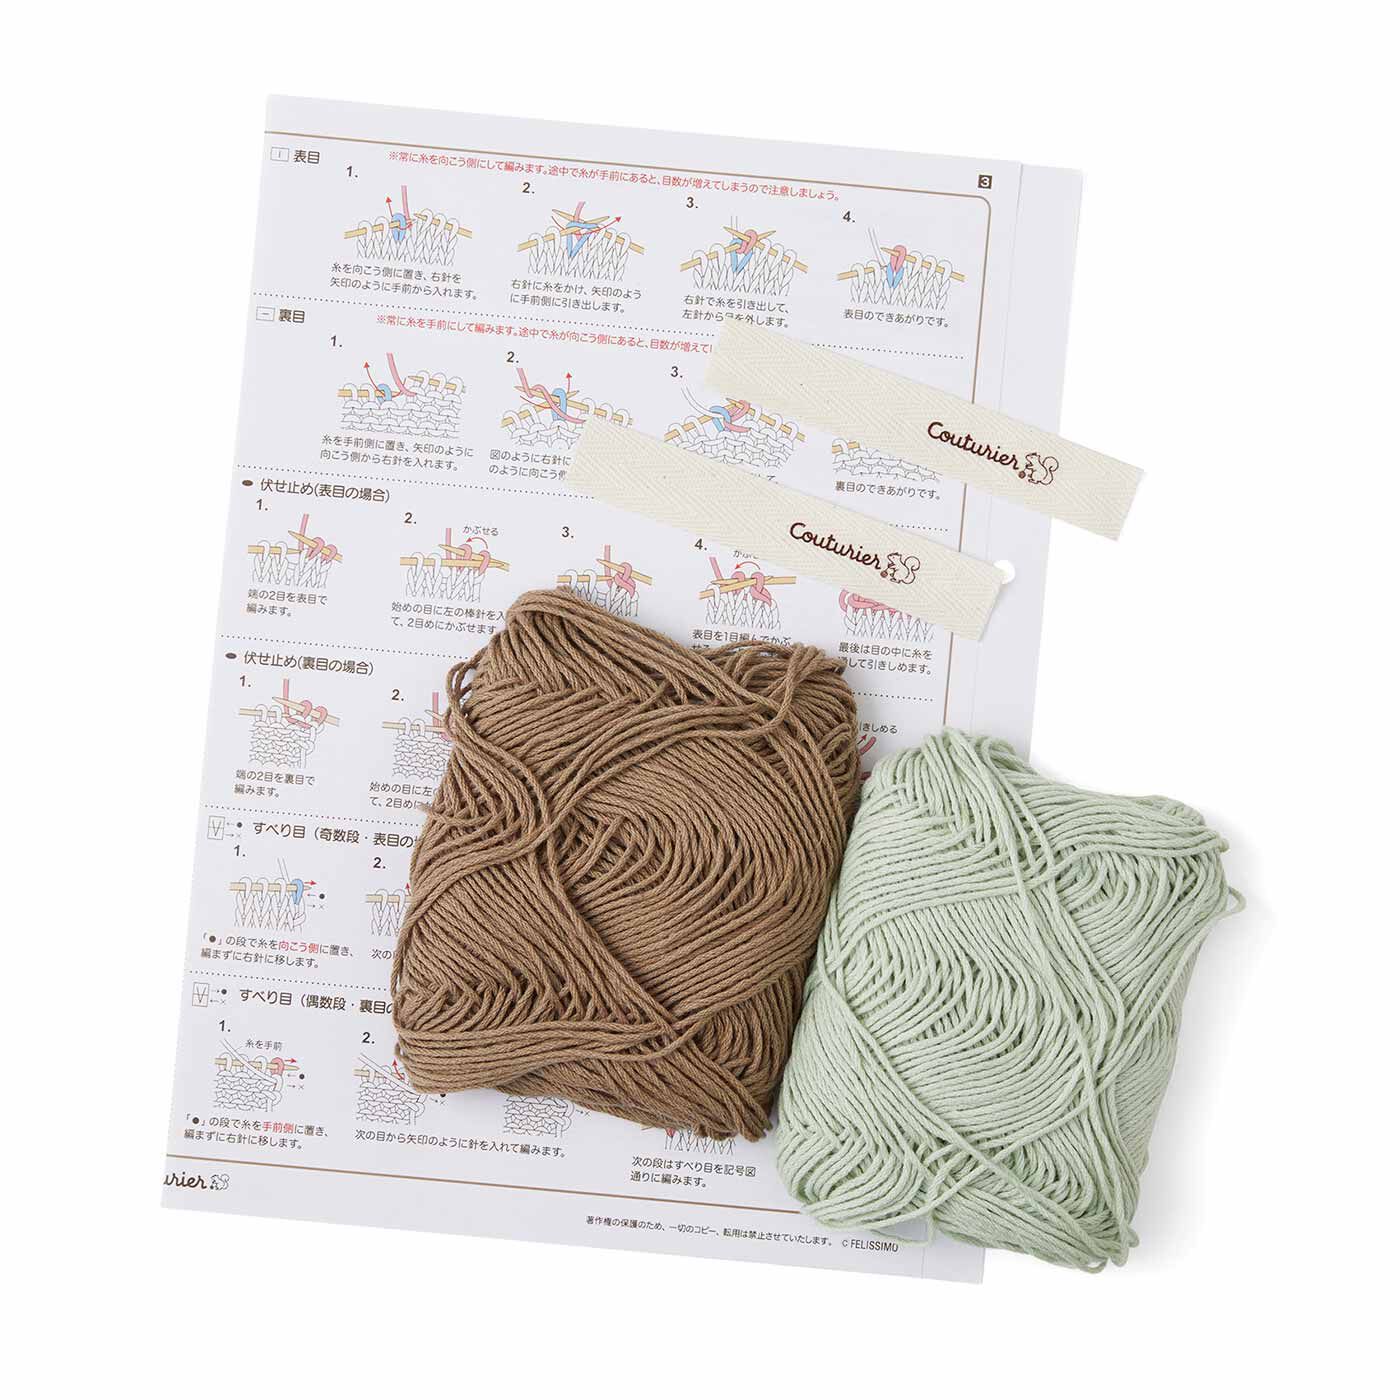 クチュリエ|気持ちを整えるような日々の習慣 棒針編み タオルのように使えるクロスの会|●1回分のお届けキット例です。　毎回2色の糸がセットで届くので、色違いで2枚のクロスを編めます。